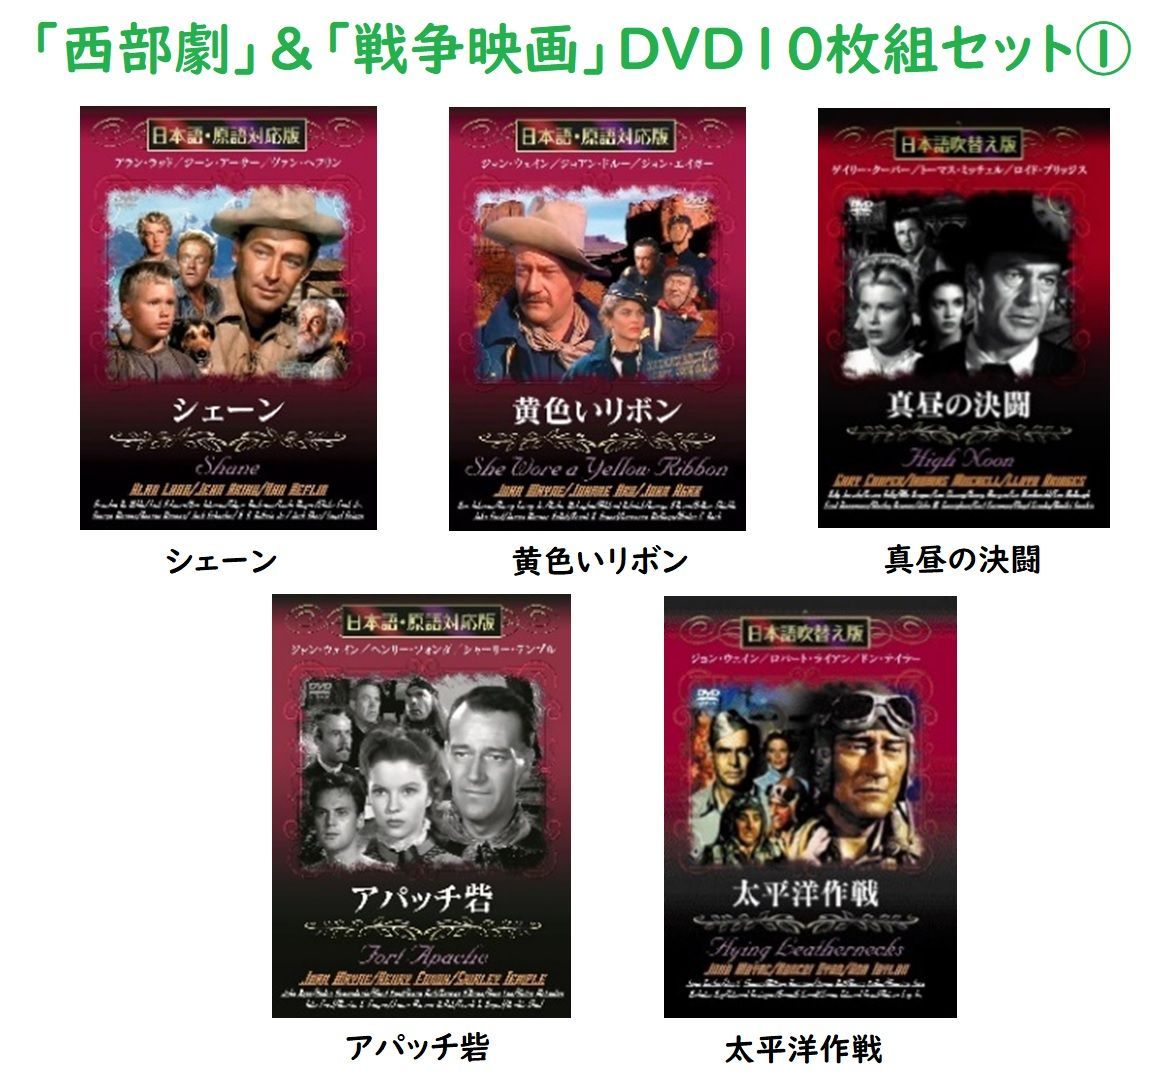 西部劇 戦争映画 日本語吹替版 DVD10枚組 - DVD